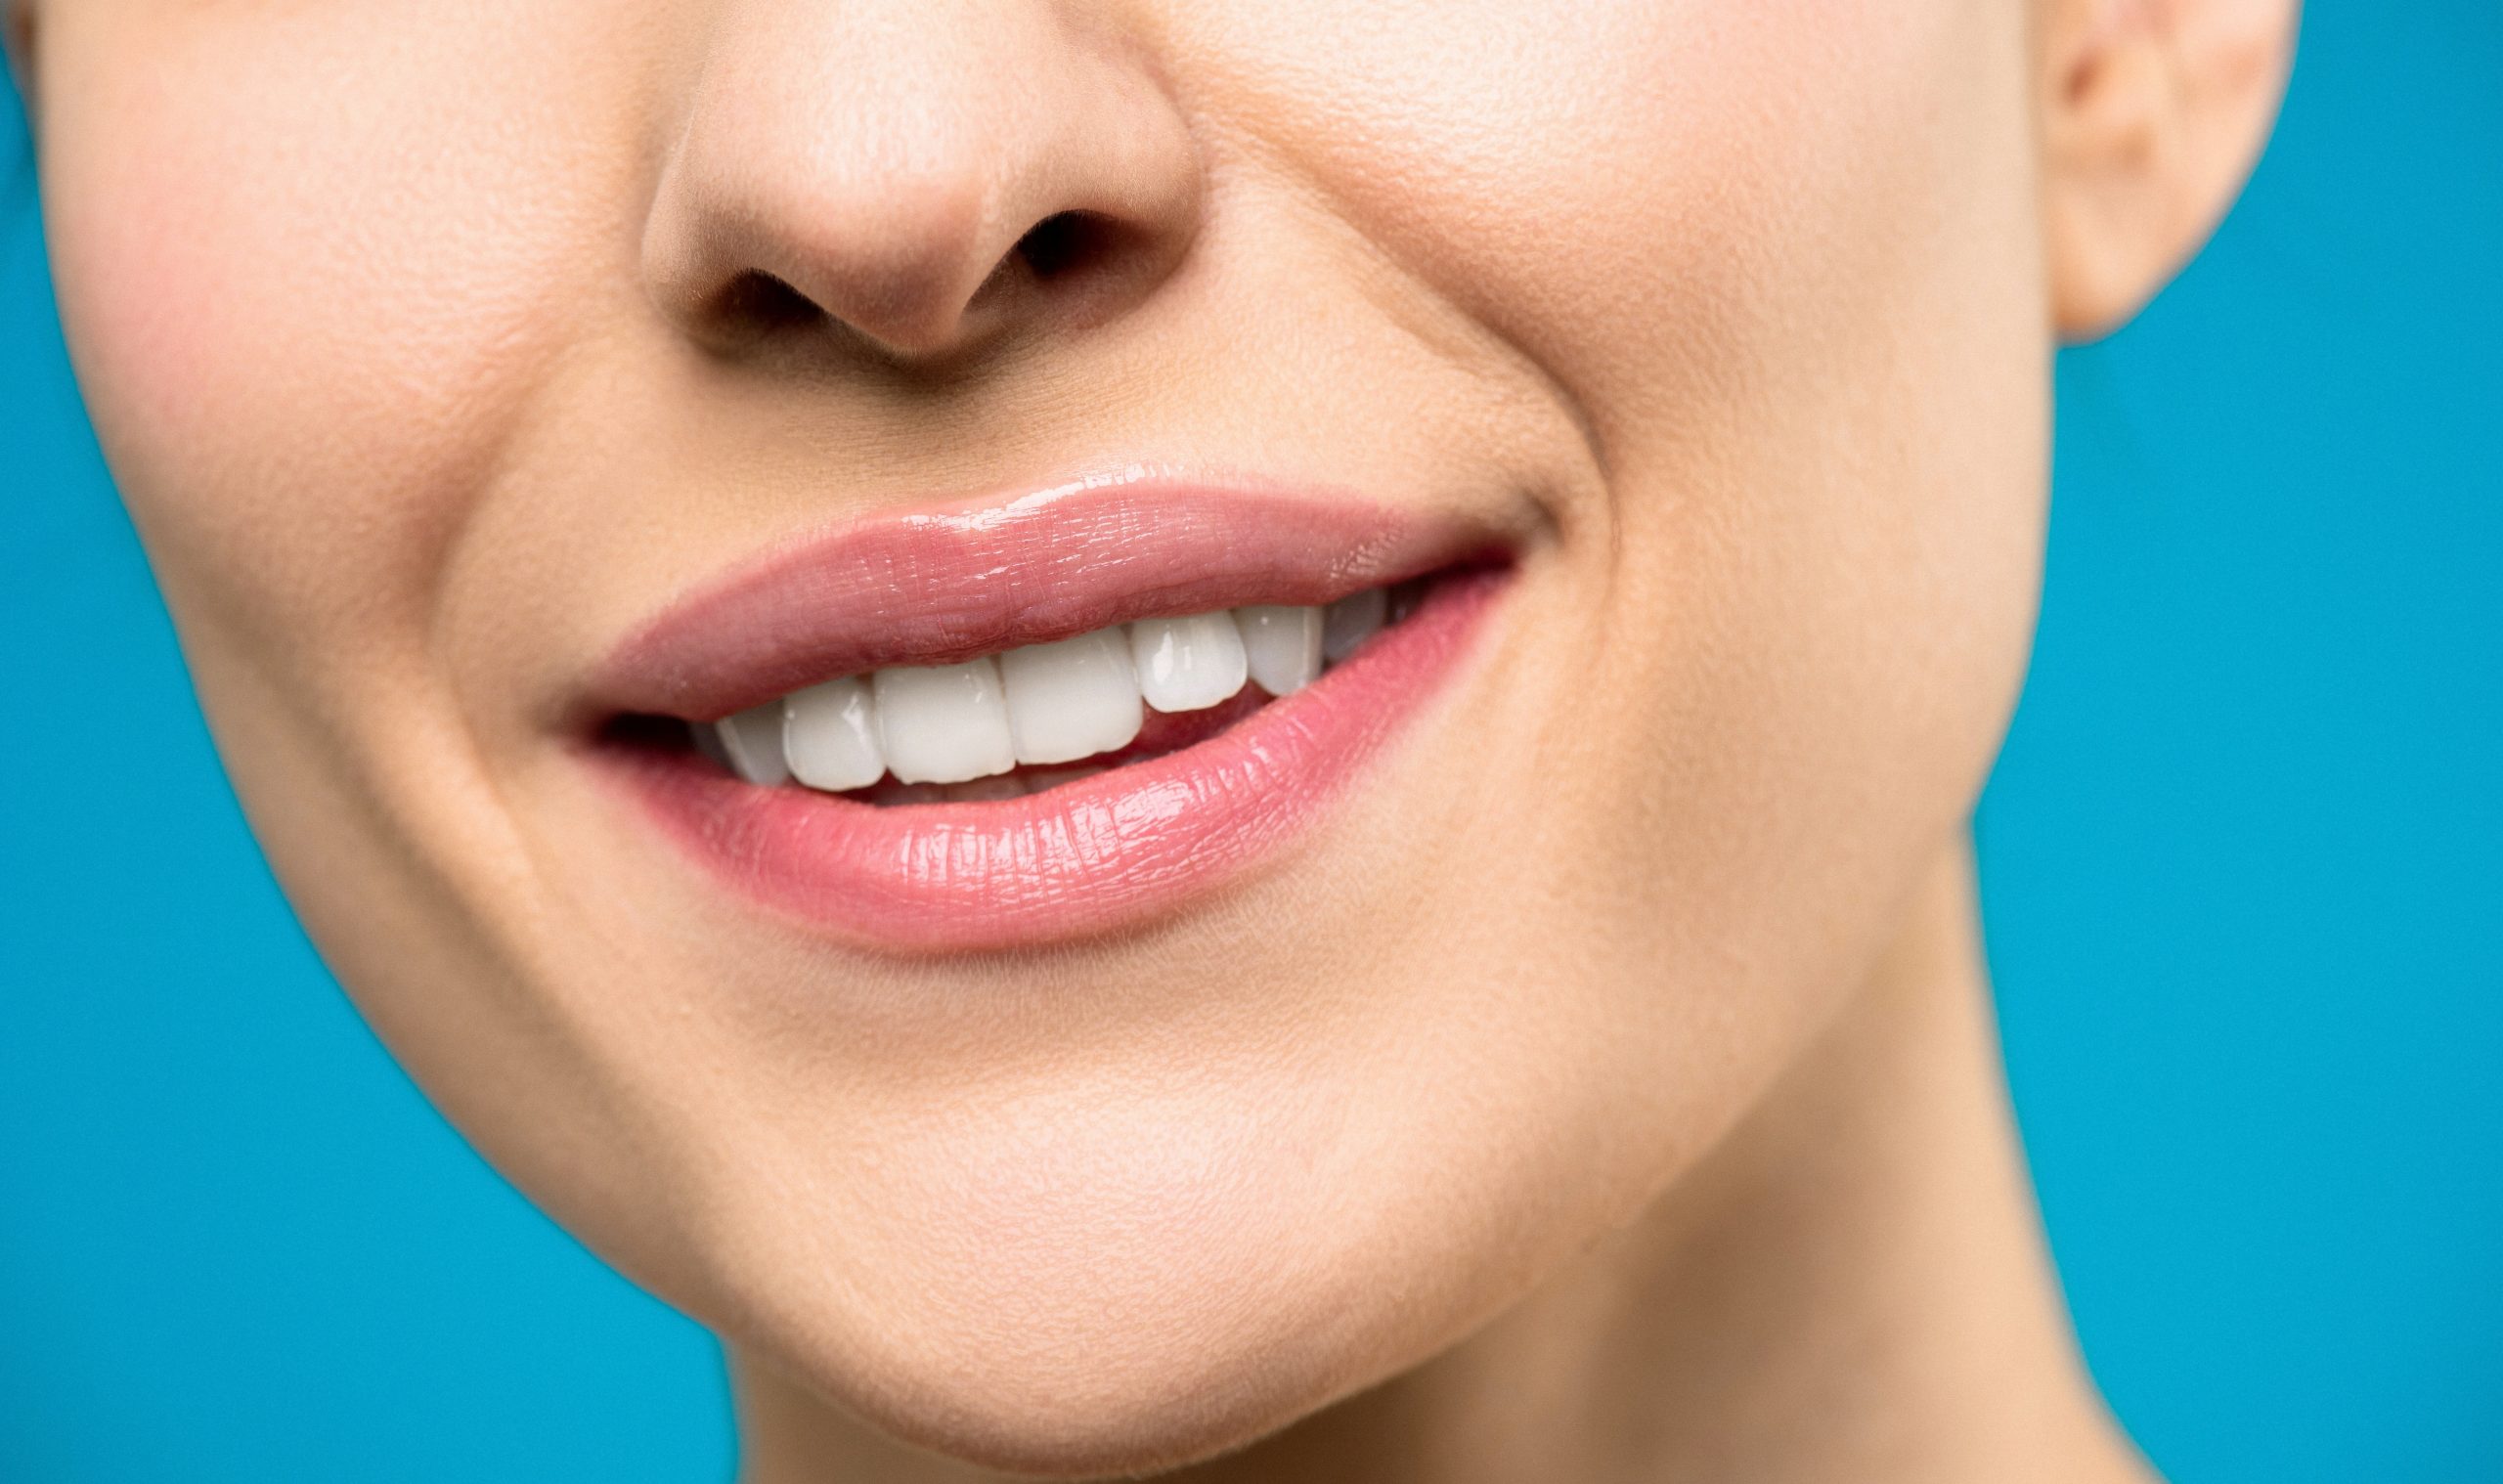 Jak pielęgnowac usta po kwasie hialuronowym? Poznaj zalecenia po zabiegu powiększania ust kwasem hialuronowym